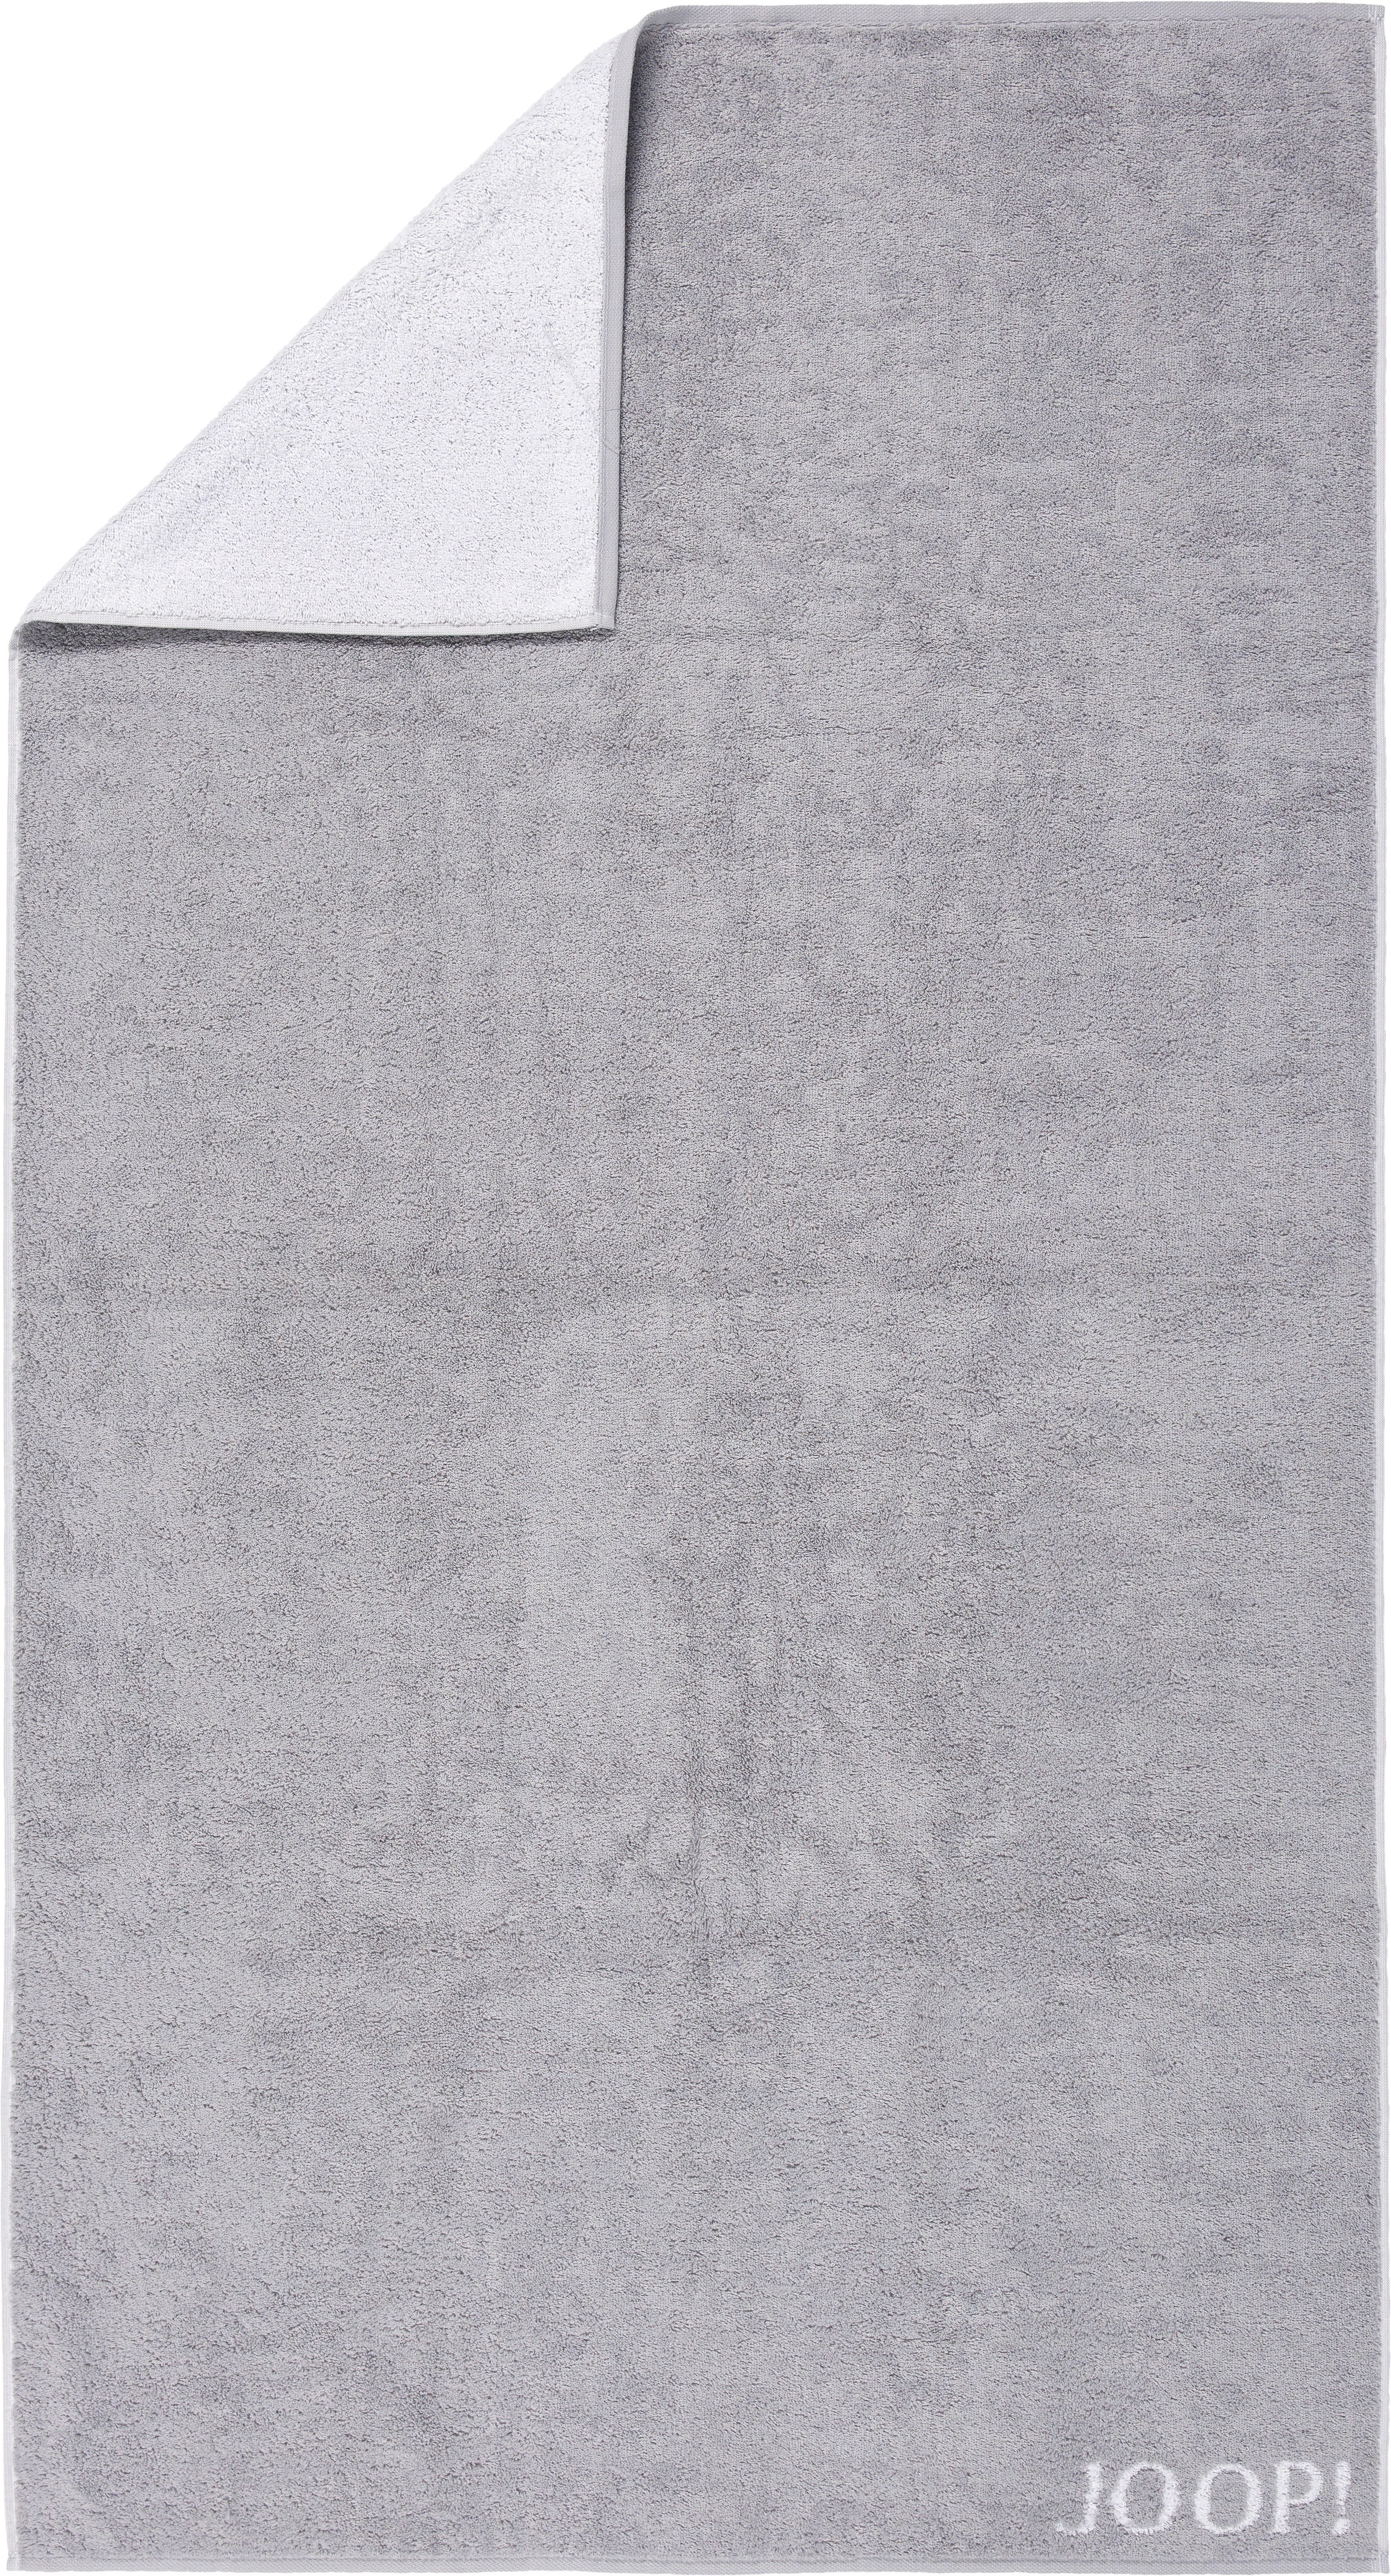 DUSCHTUCH CLASSIC DOUBLEFACE 80/150 cm  - Silberfarben/Hellgrau, Basics, Textil (80/150cm) - Joop!